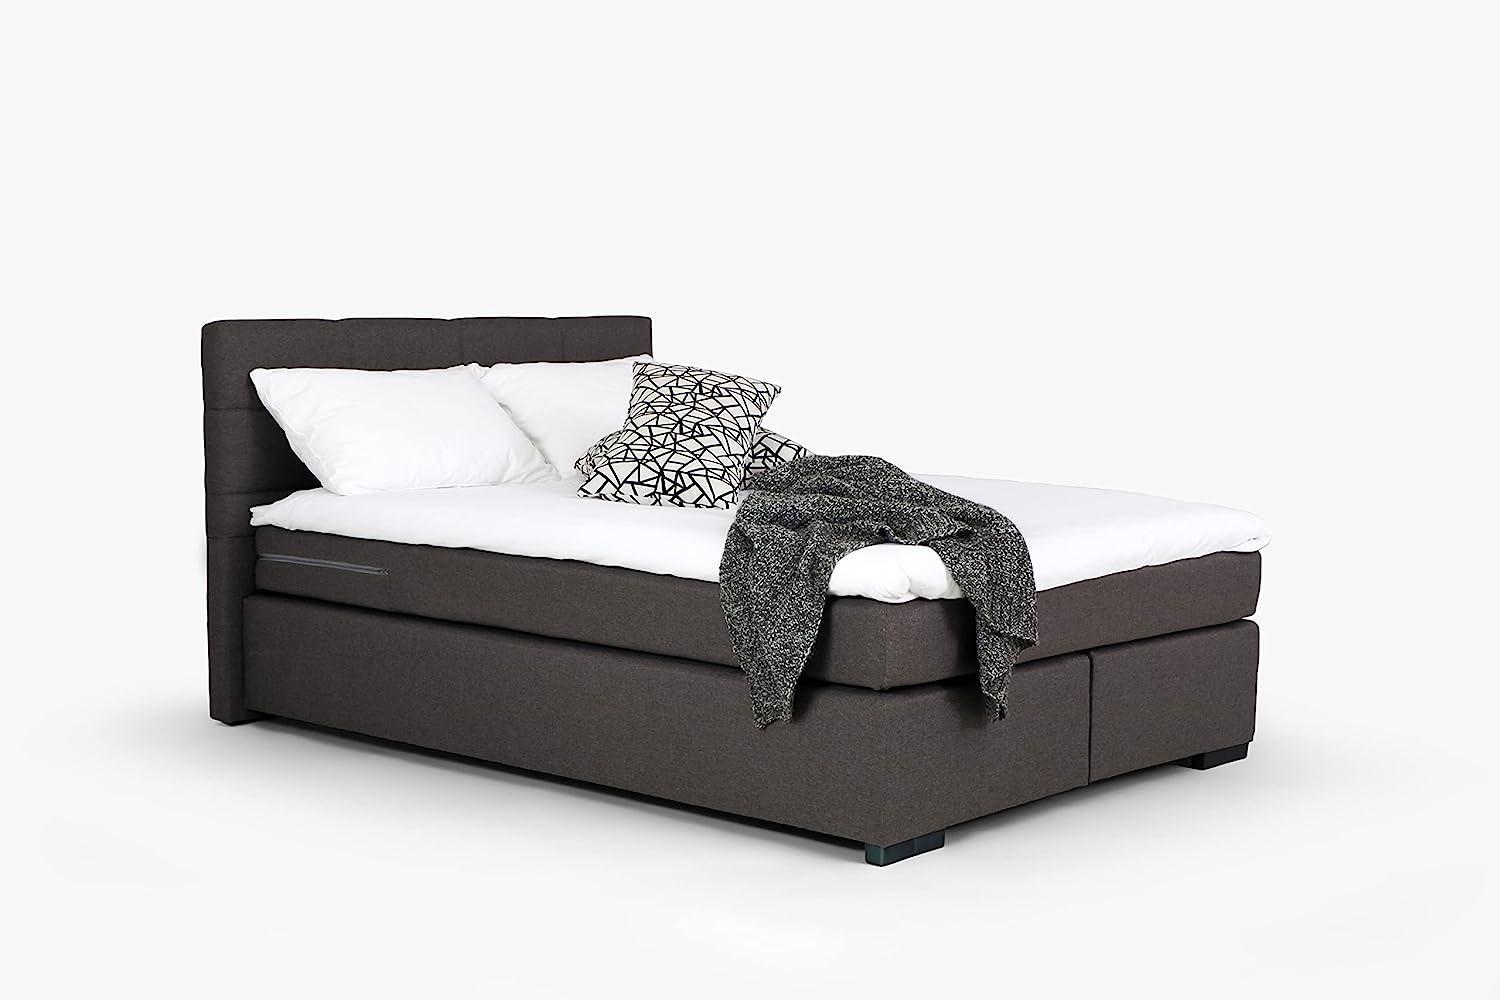 Mivano Beast Boxbett, Komfortables Bett mit Durchgehender Matratze (H3) und Topper, Flachgewebe Karoo Dunkelgrau, Liegefläche 160 x 200 cm Bild 1